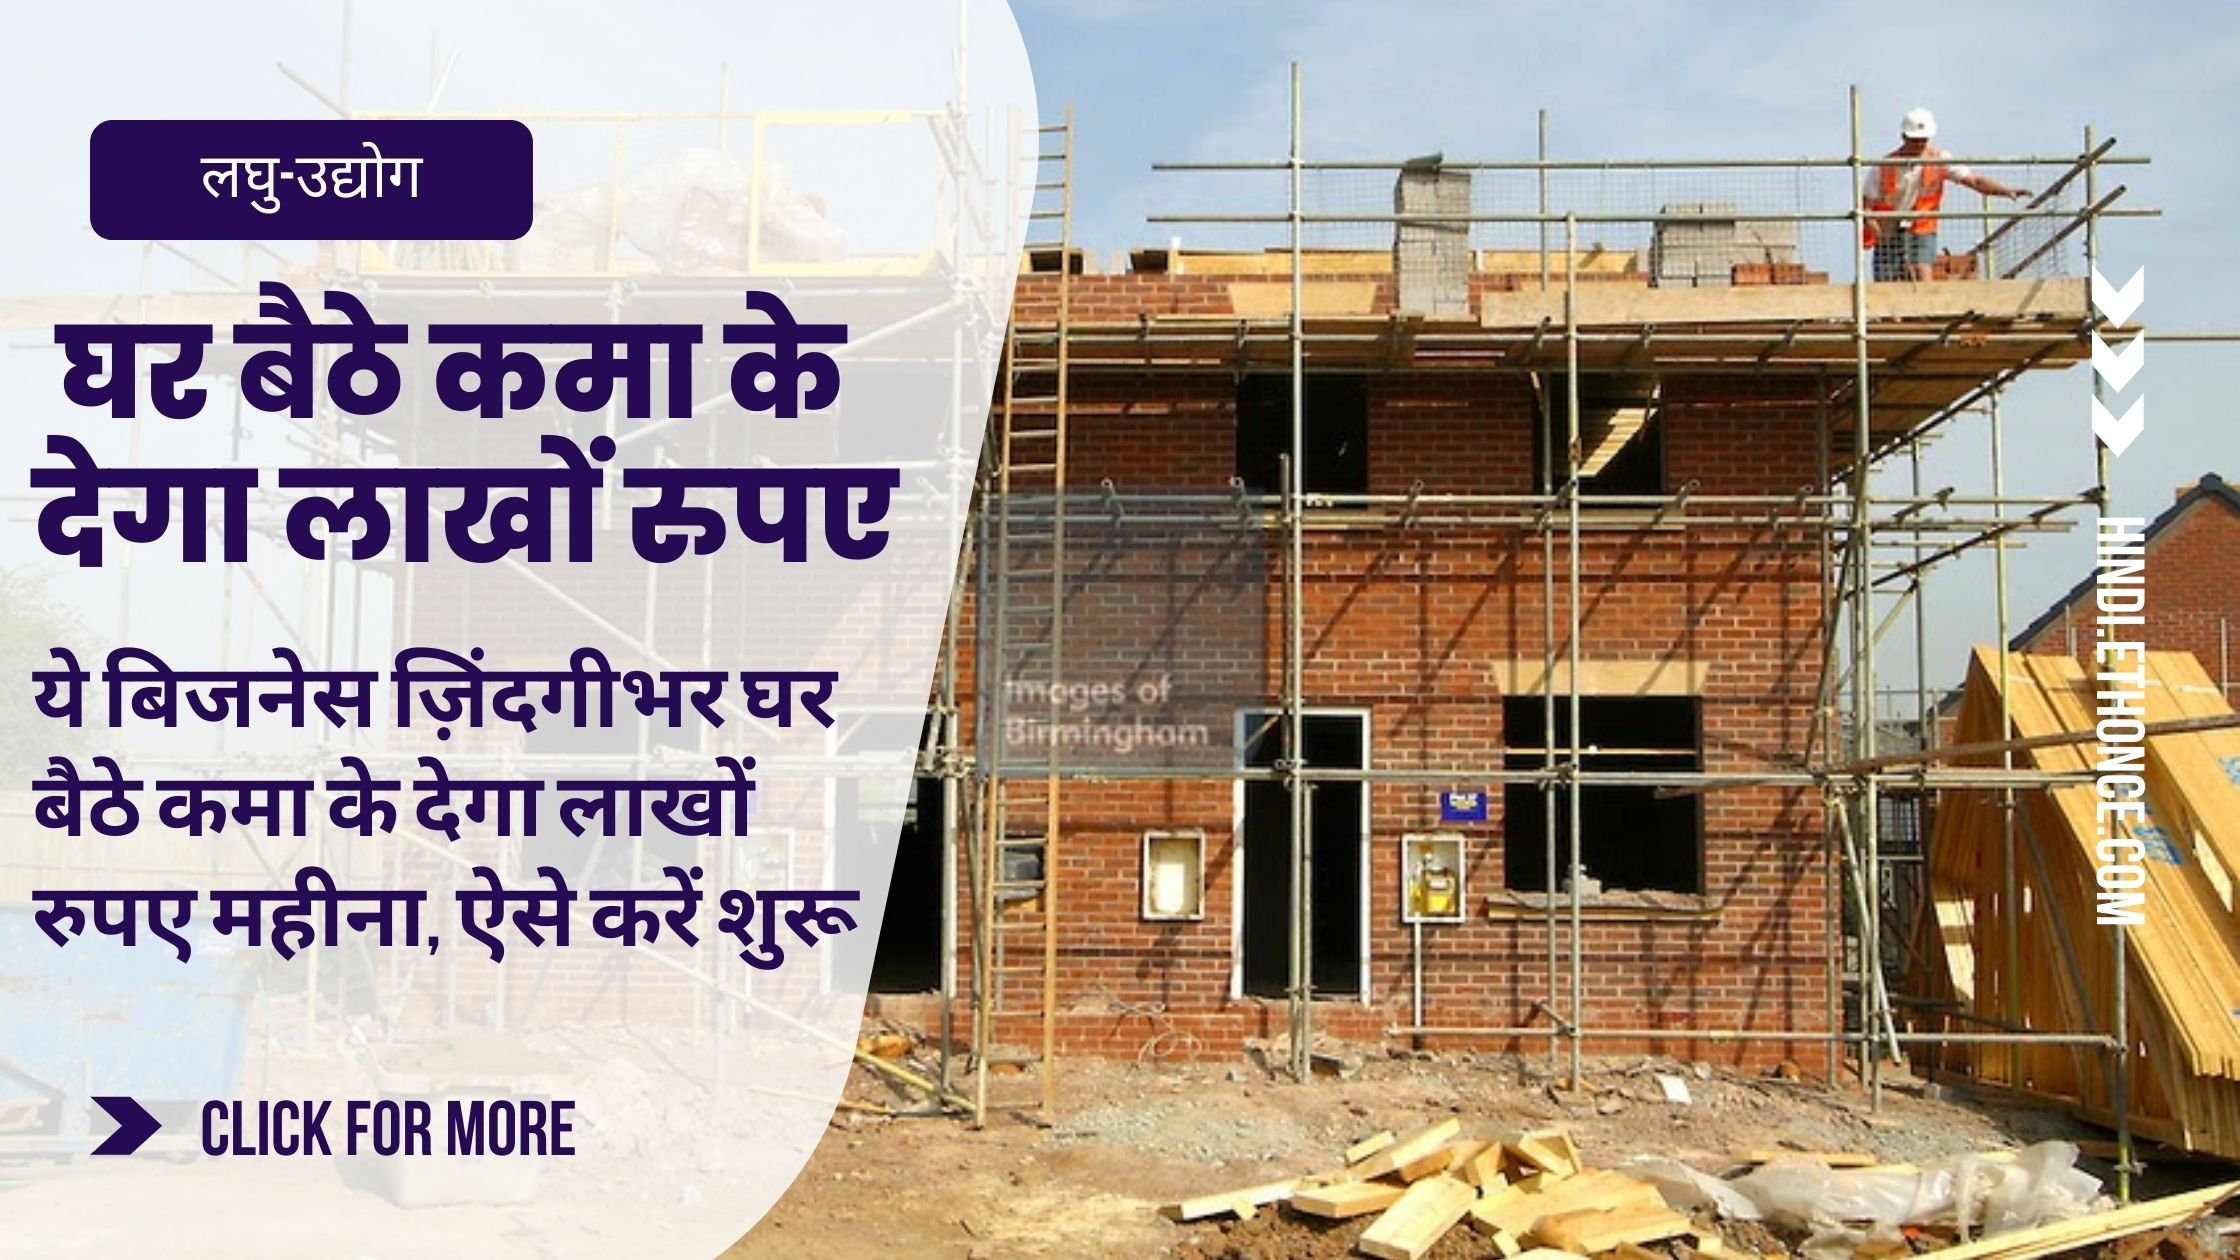 ये बिजनेस ज़िंदगीभर घर बैठे कमा के देगा लाखों रुपए महीना, ऐसे करें शुरू